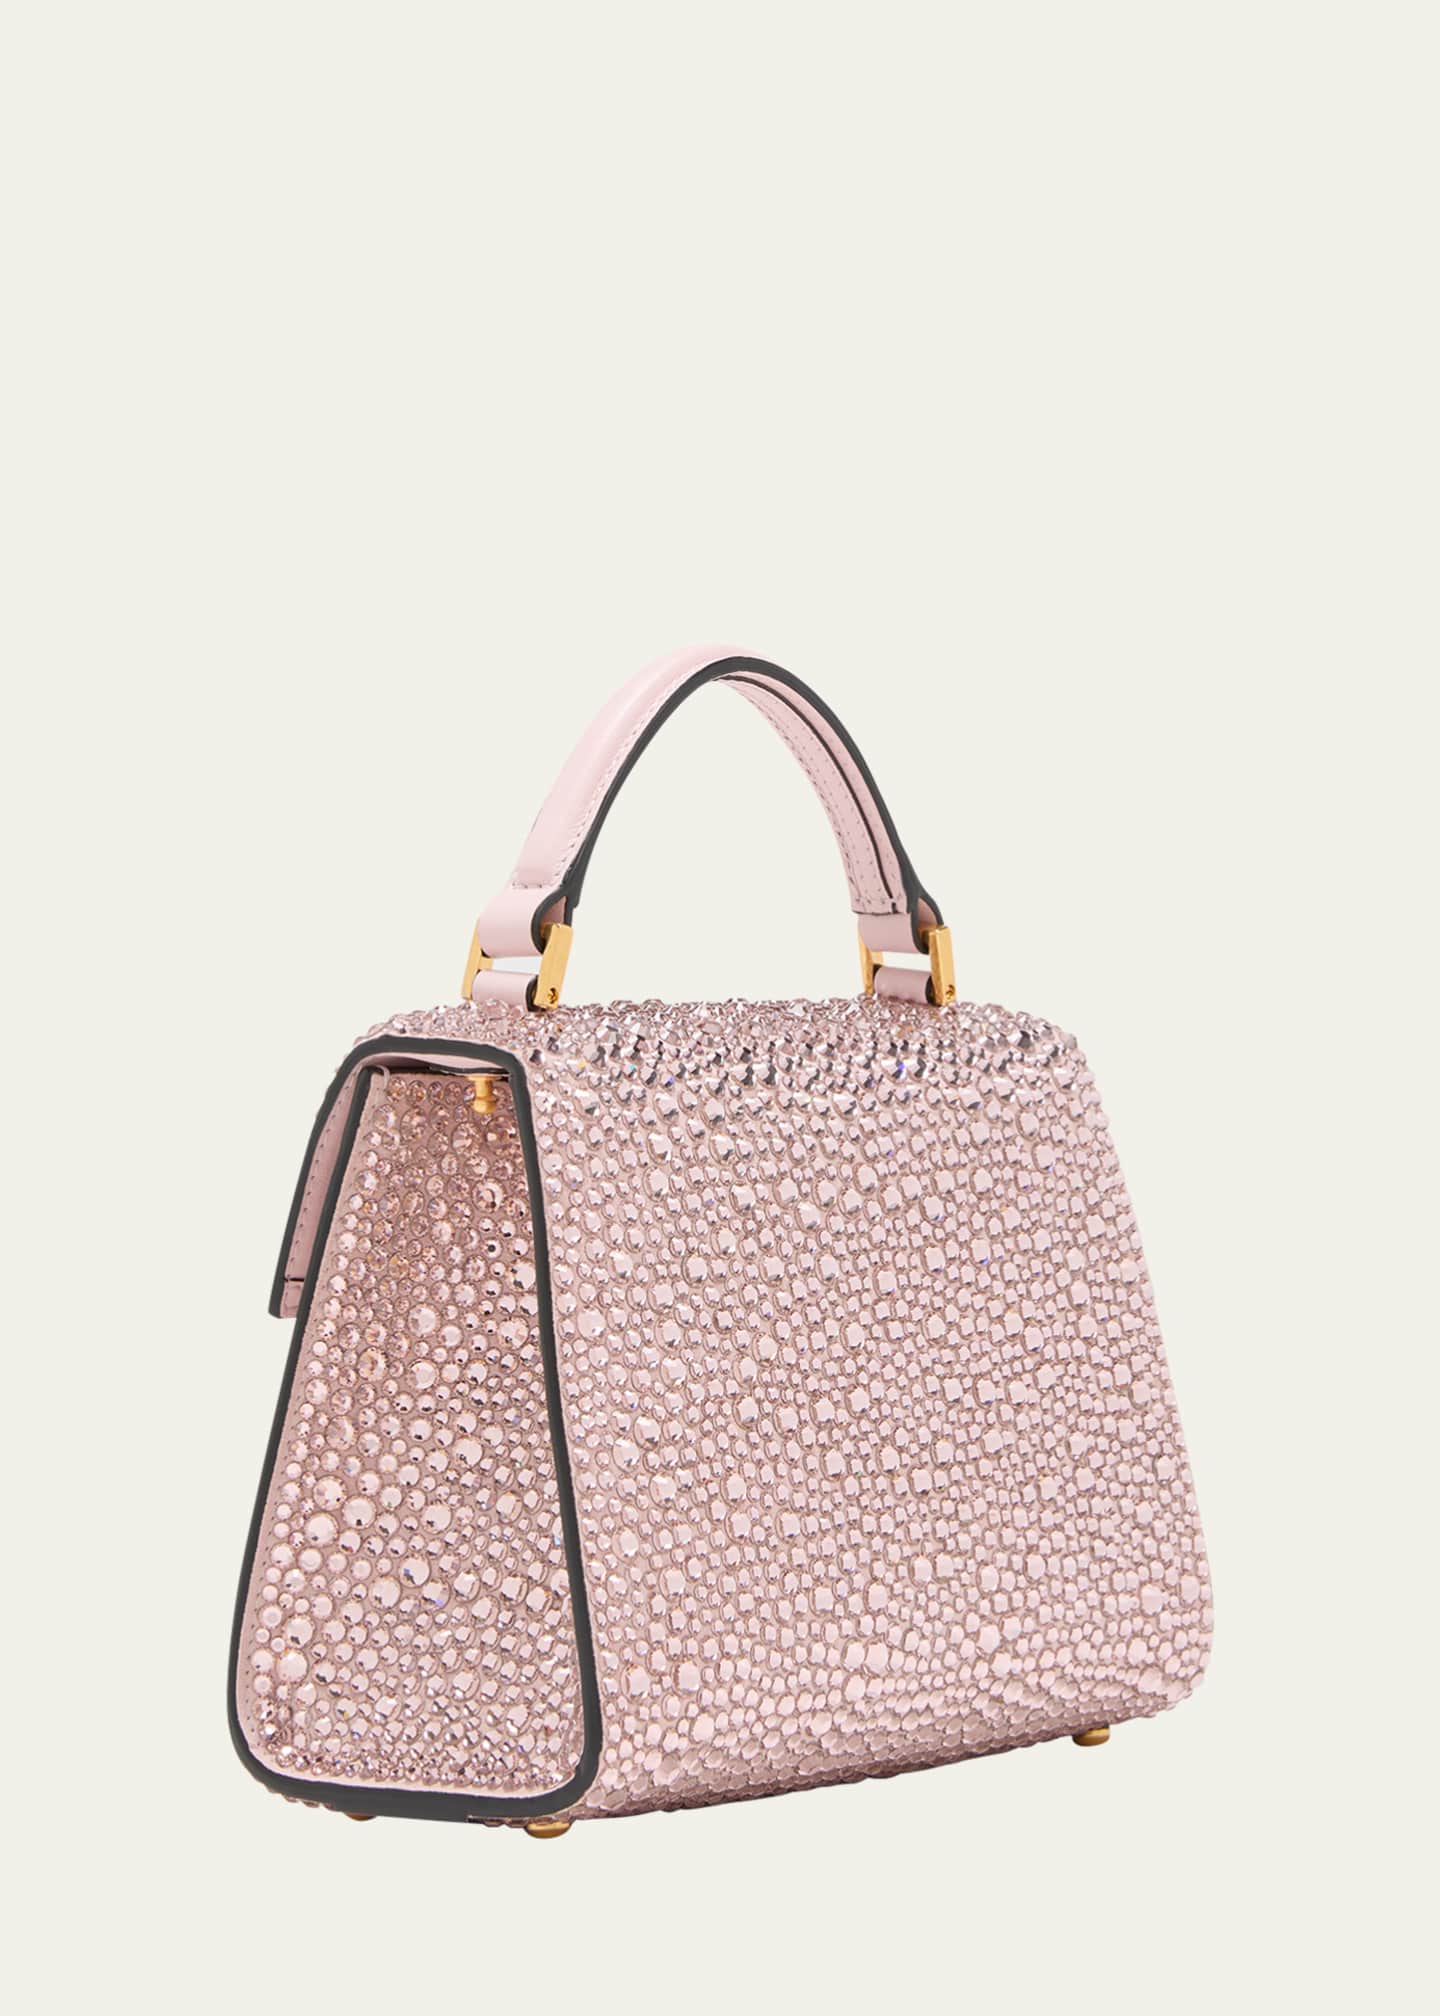 Valentino Embellished Vsling Top-Handle Bag